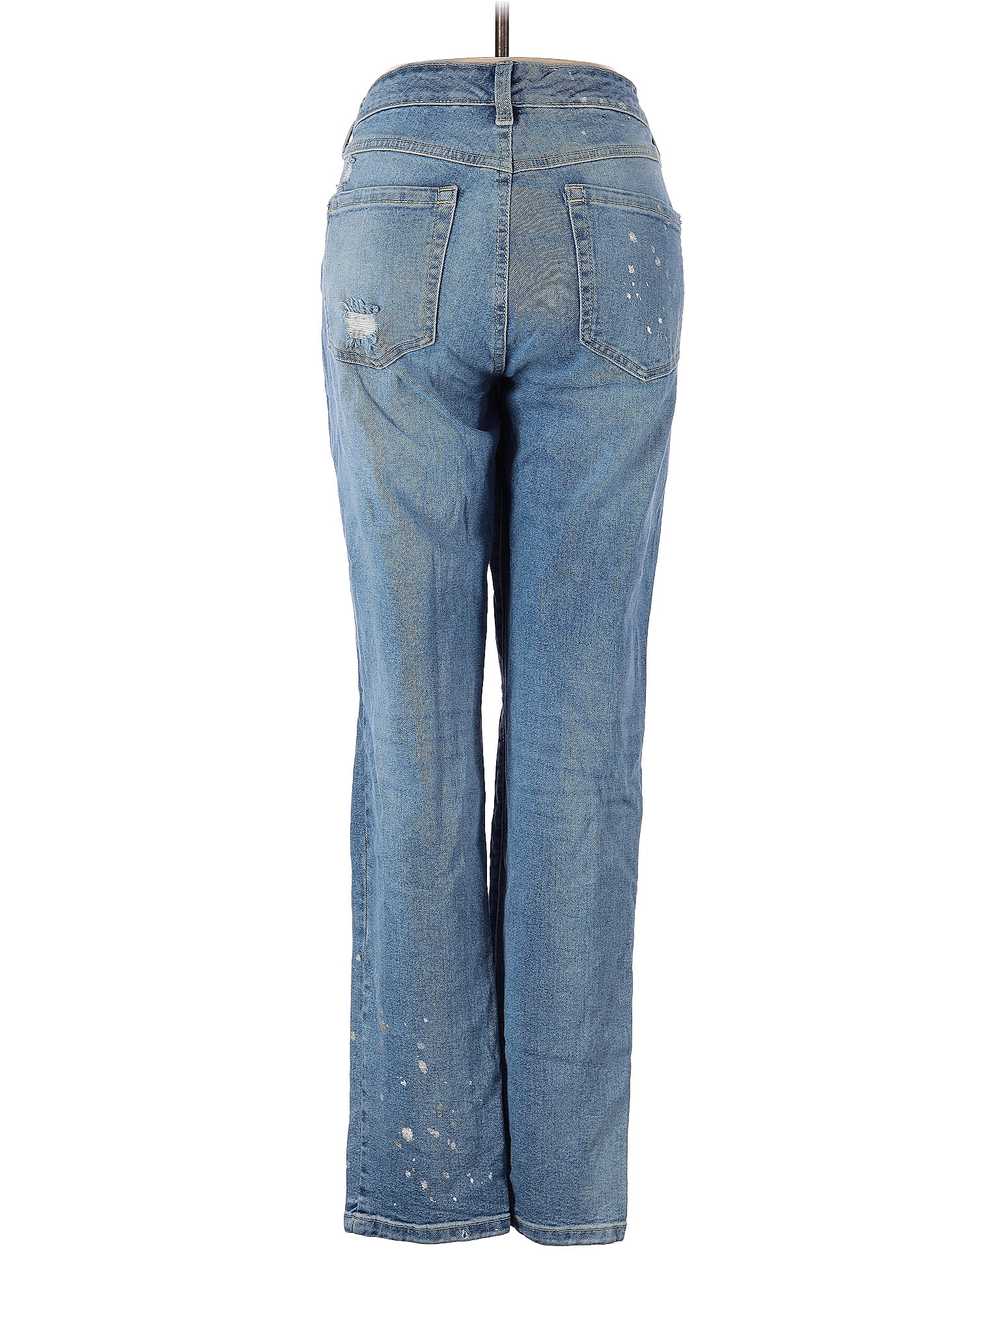 INC International Concepts Women Blue Jeans 8 - image 2